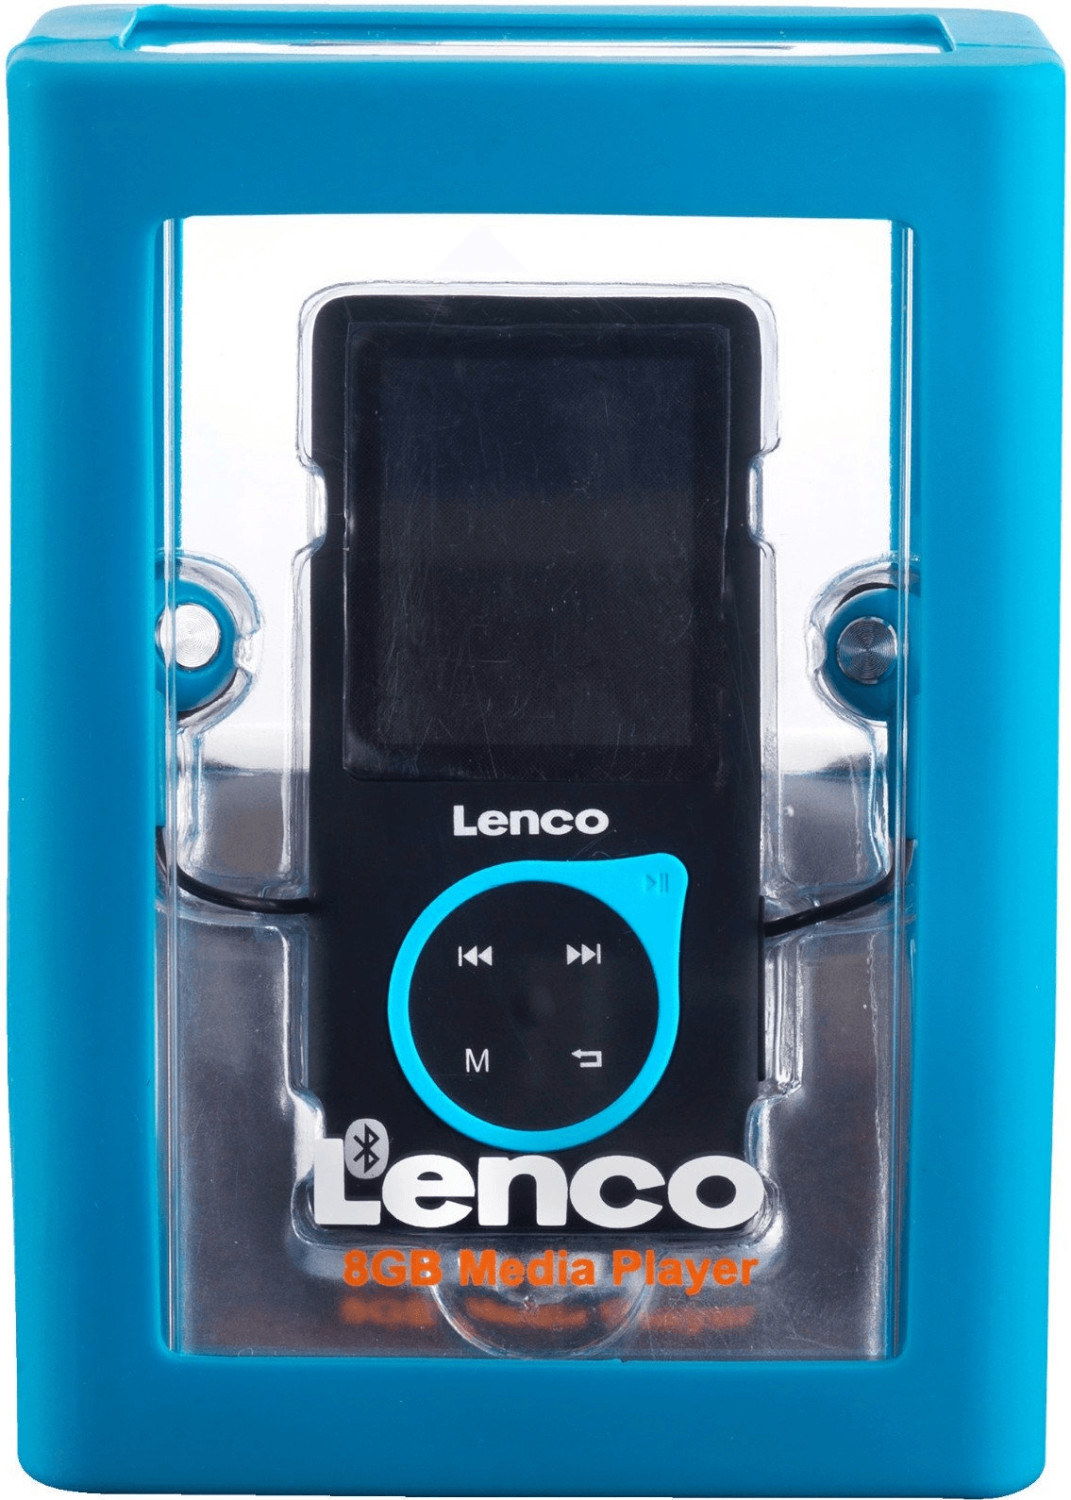 Lenco Xemio-768 ab 41,52 bei | € Preisvergleich